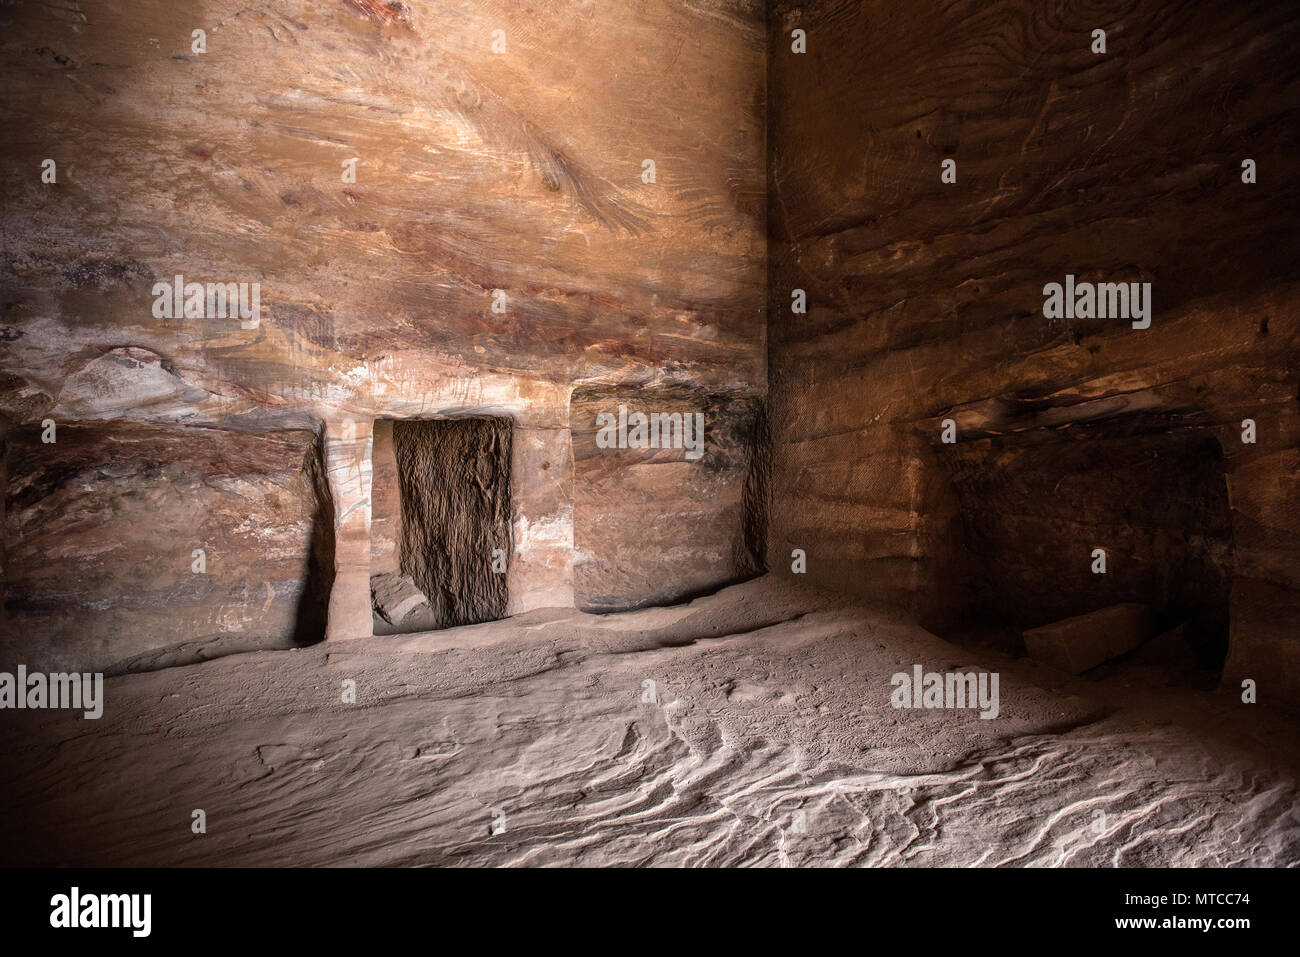 En el interior de una tumba real en Petra, Jordania. Metro rocas antiguas talladas, cueva utilizada como lugar de enterramiento Foto de stock